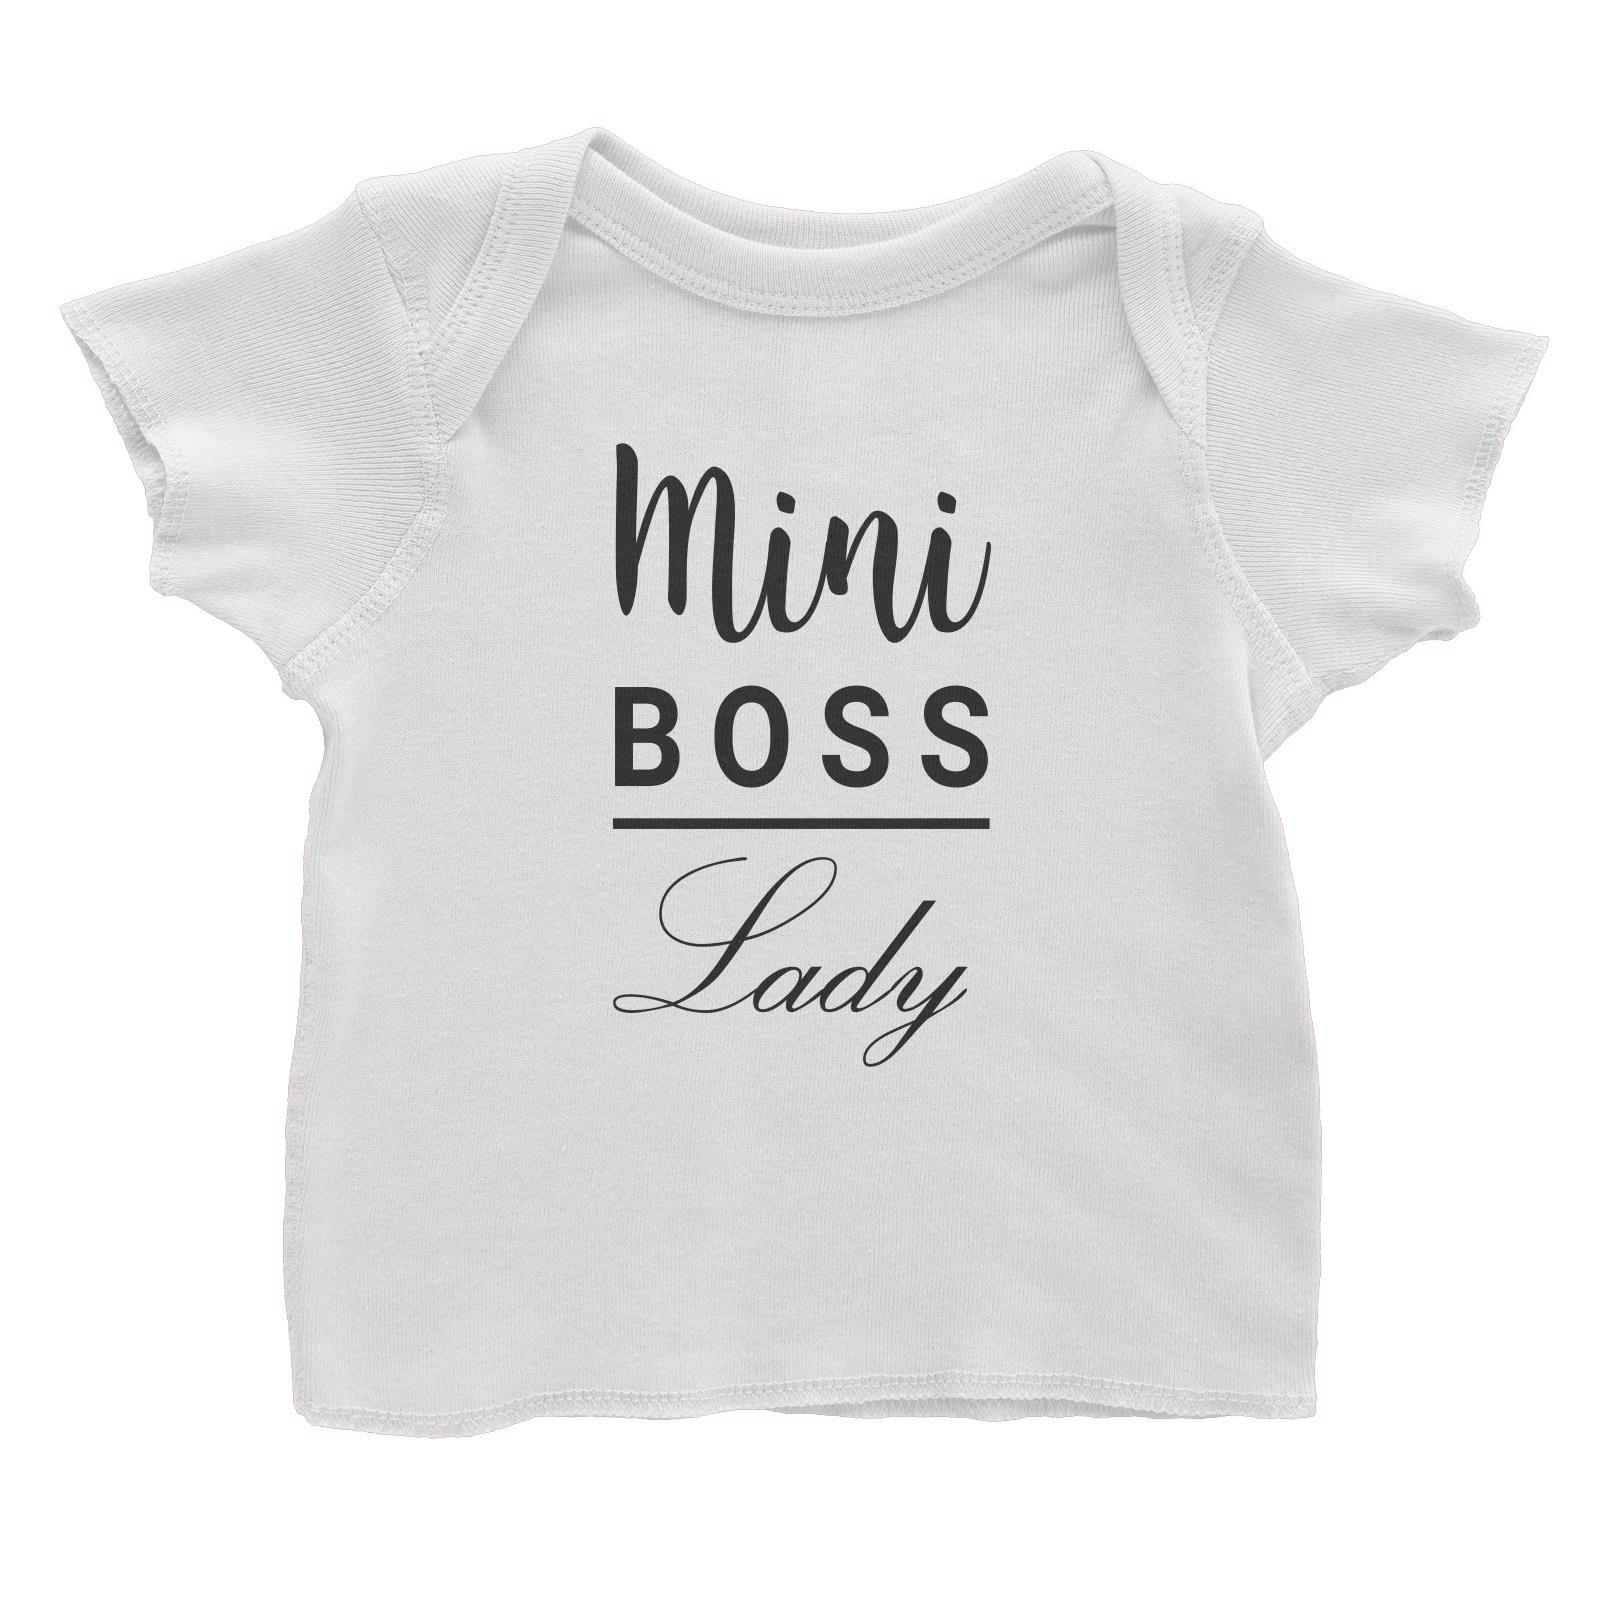 Mini Boss Lady Baby T-Shirt  Matching Family